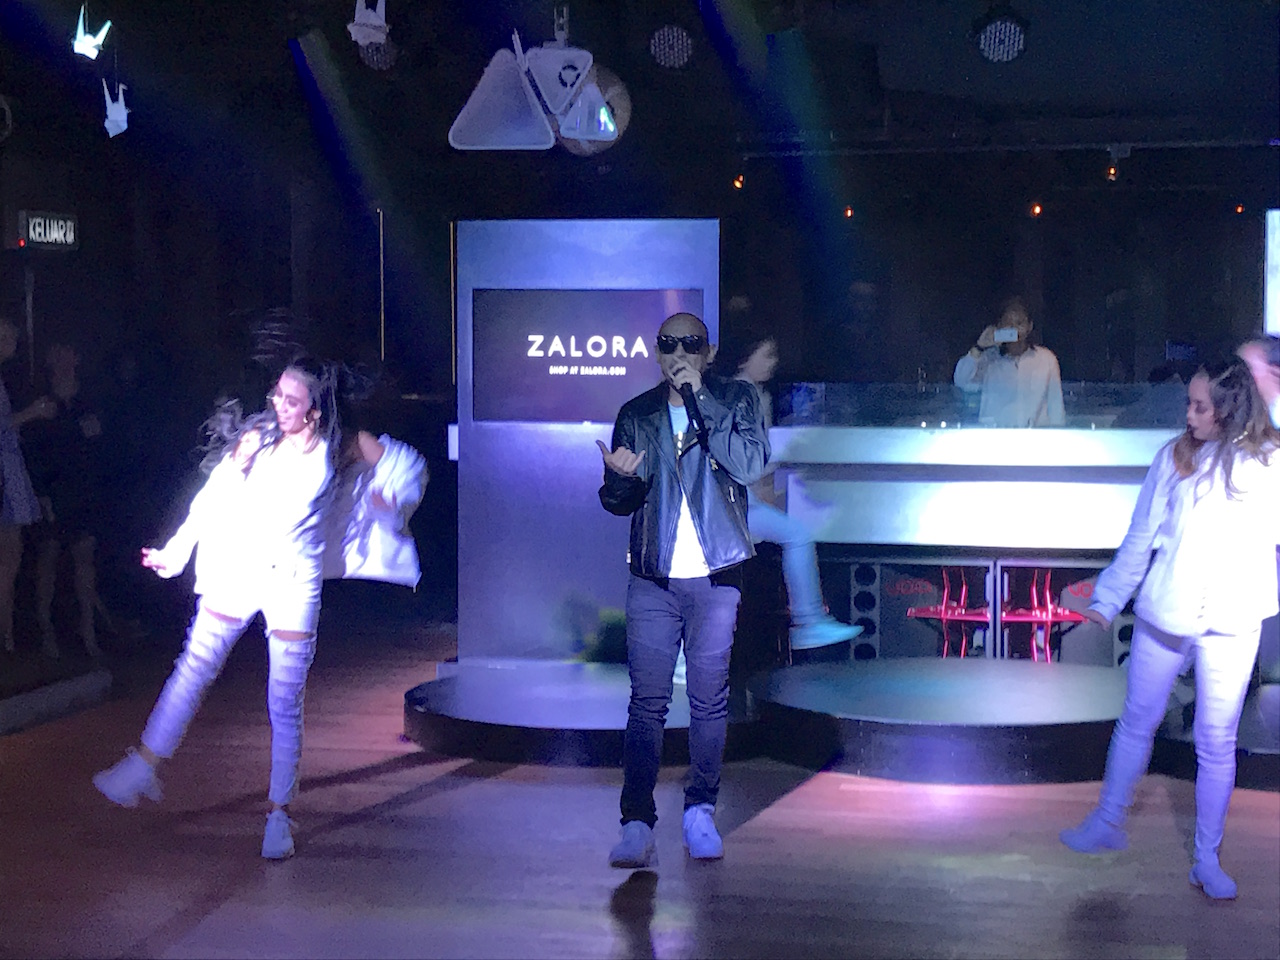 Joe Flizzow performed at ZALORA Style Awards last night